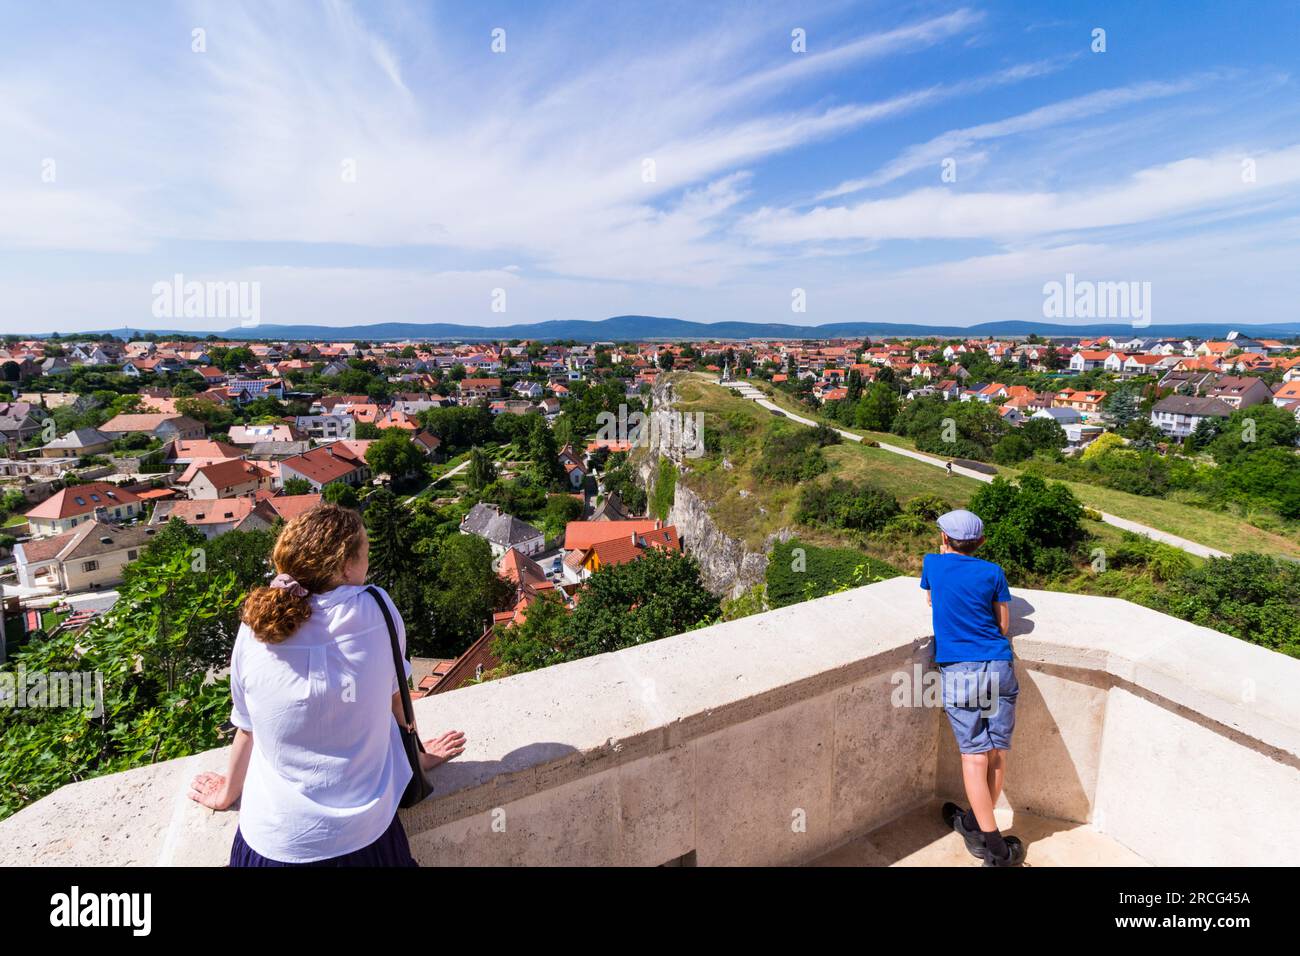 Touristes regardant le paysage urbain avec Benedek-hegy (Benedict Hill), quartier du château, Veszprem, Hongrie Banque D'Images